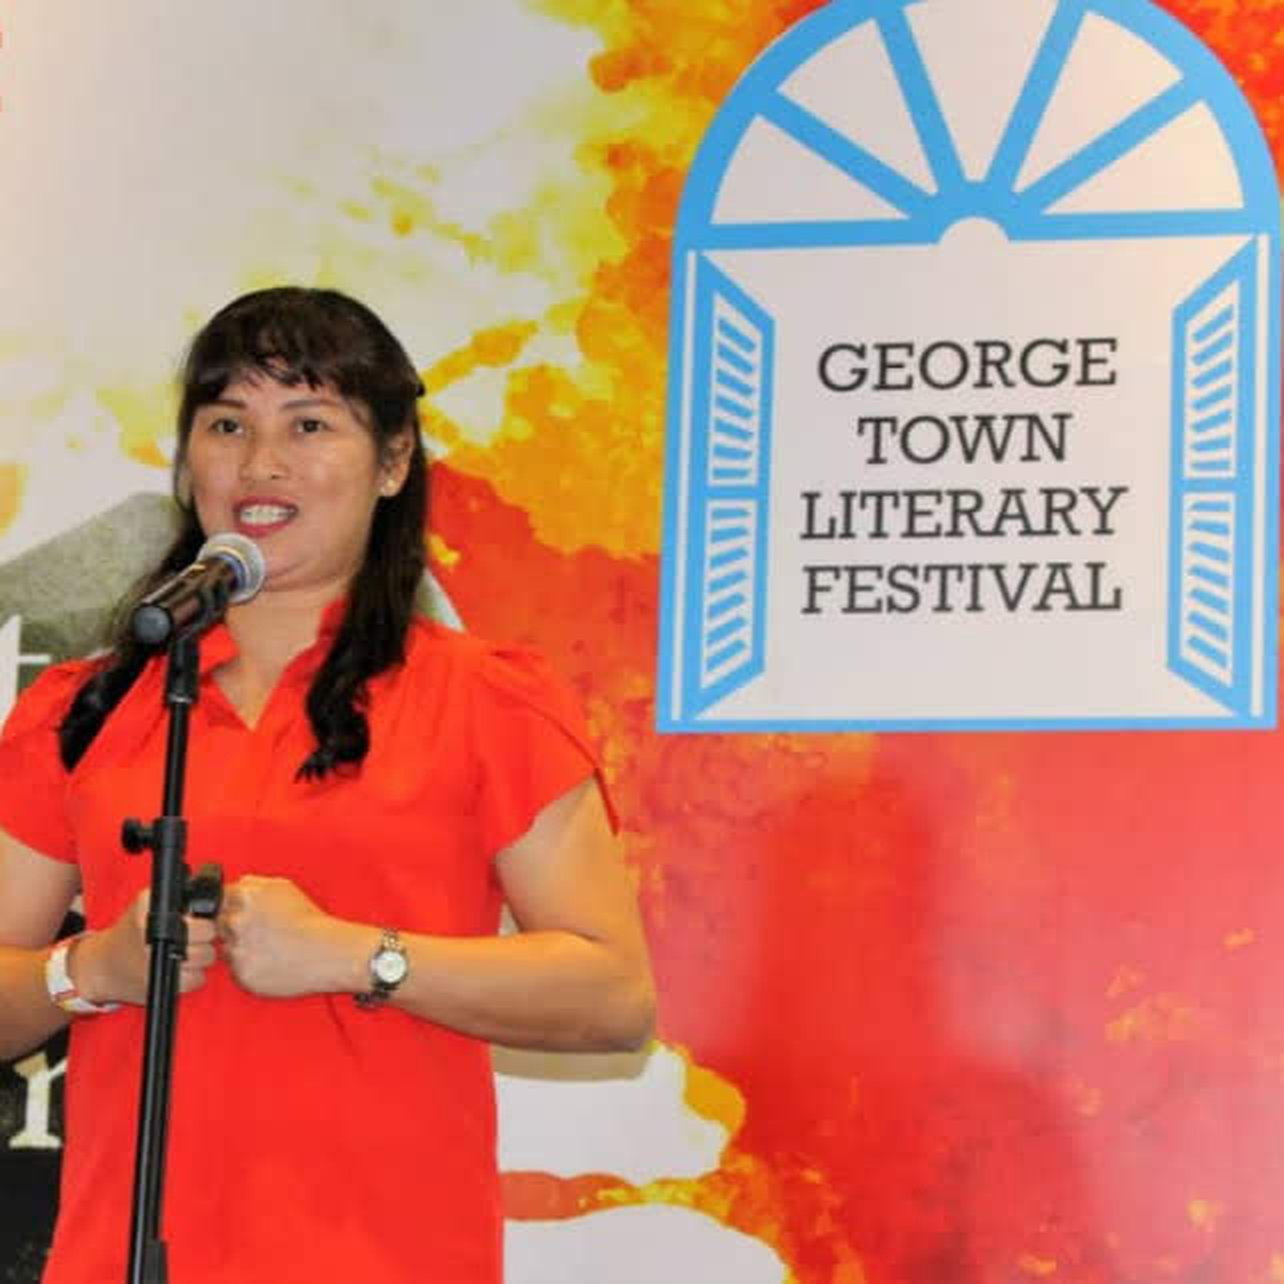 乔安曾受邀参与槟城乔治市文学节（George Town Literary Festival）和新加坡国际移民节（Global Migrant Festival），并在现场吟诵自己的诗作。